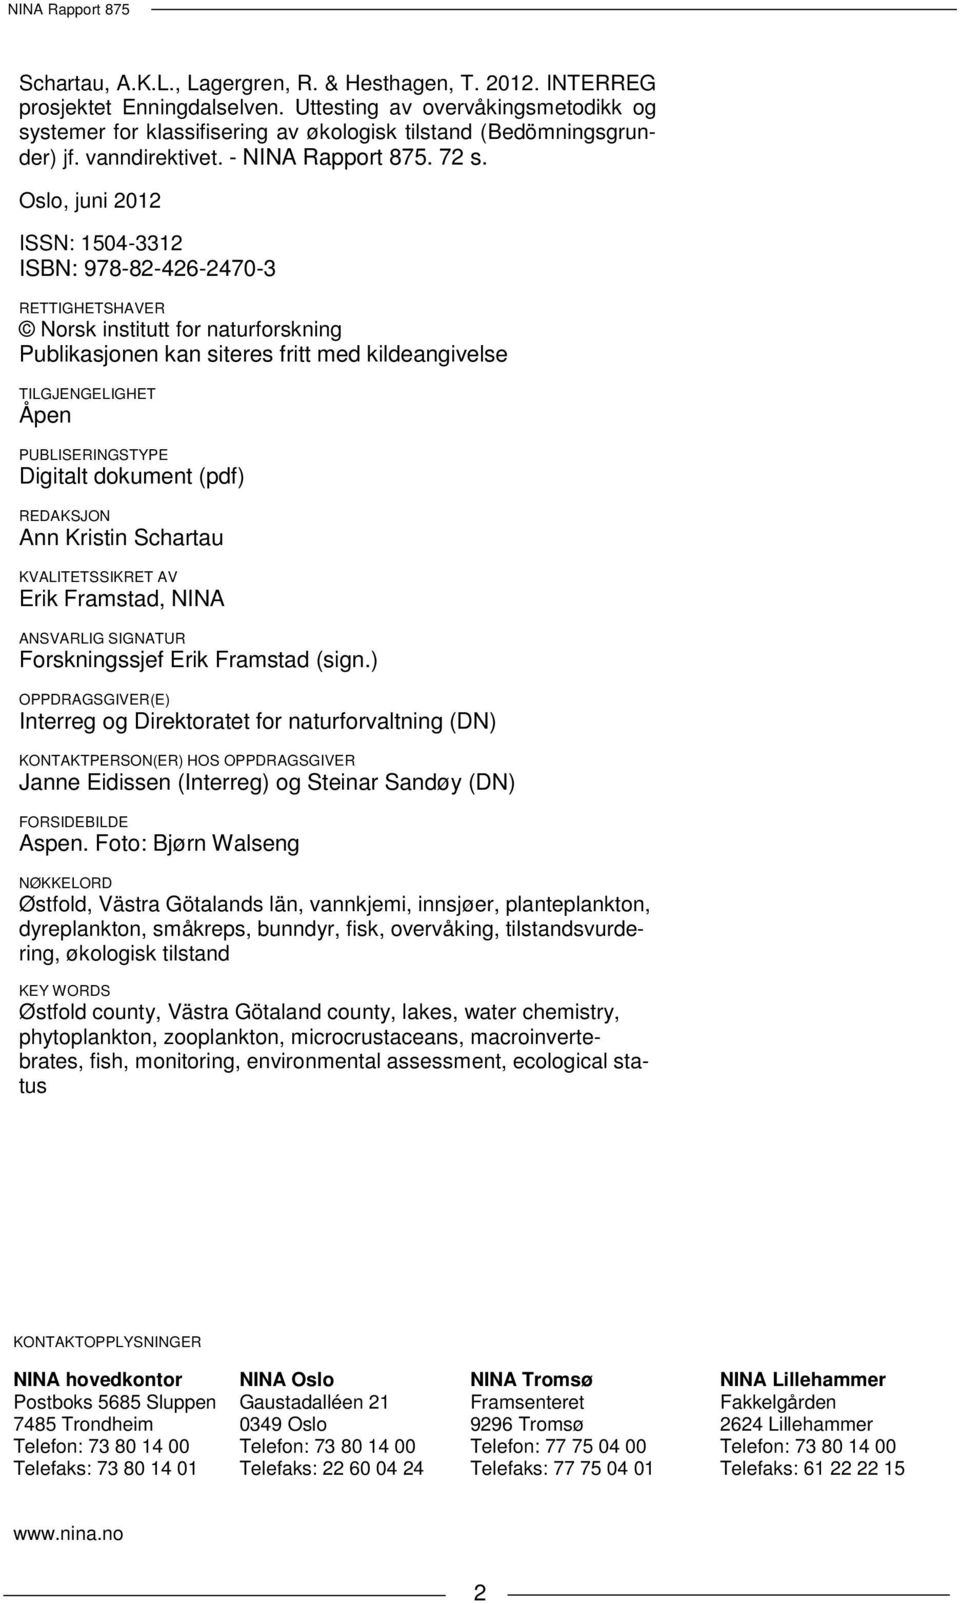 Oslo, juni 2012 ISSN: 1504-3312 ISBN: 978-82-426-2470-3 RETTIGHETSHAVER Norsk institutt for naturforskning Publikasjonen kan siteres fritt med kildeangivelse TILGJENGELIGHET Åpen PUBLISERINGSTYPE